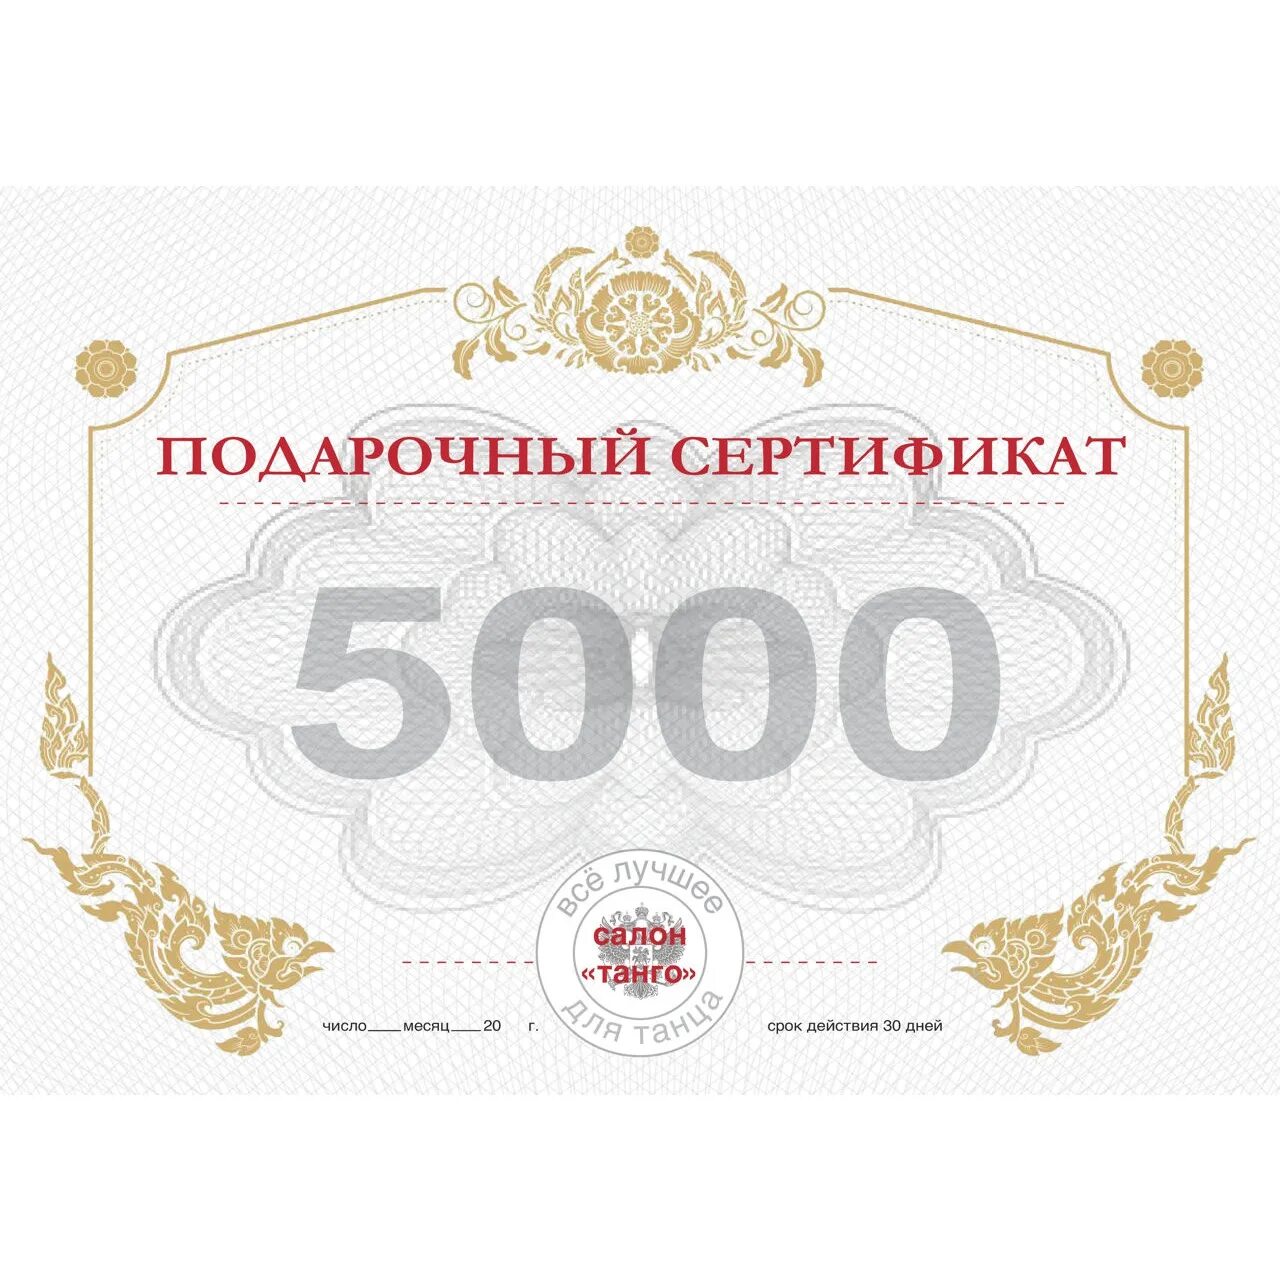 Сертификат. Денежный сертификат. Подарочный сертификат рубли. Сертификат денежный подарочный.